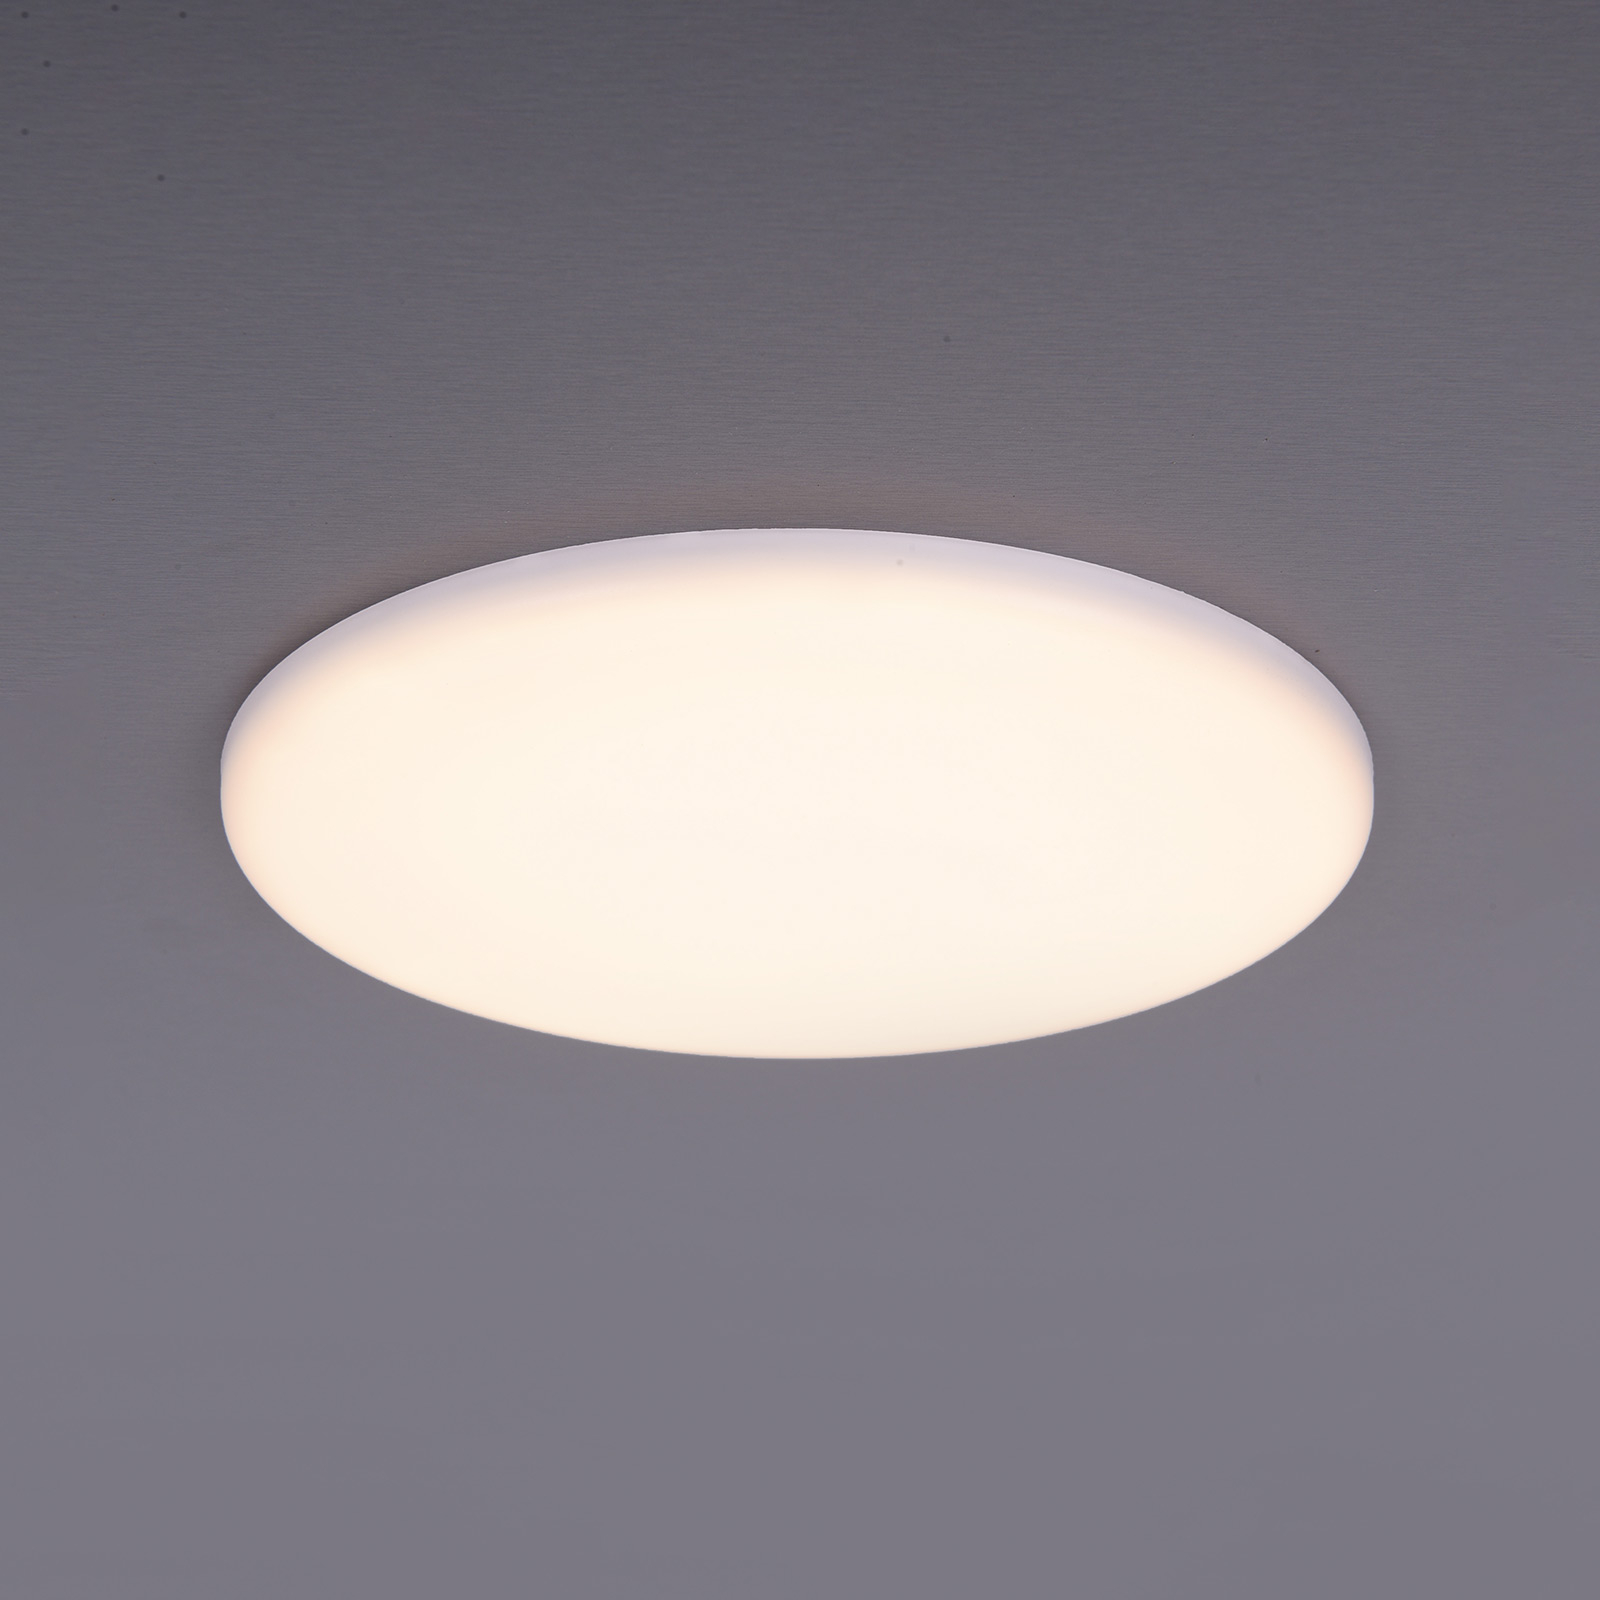 Lampe encastrable LED Sula, rond, IP66, Ø 15,5 cm